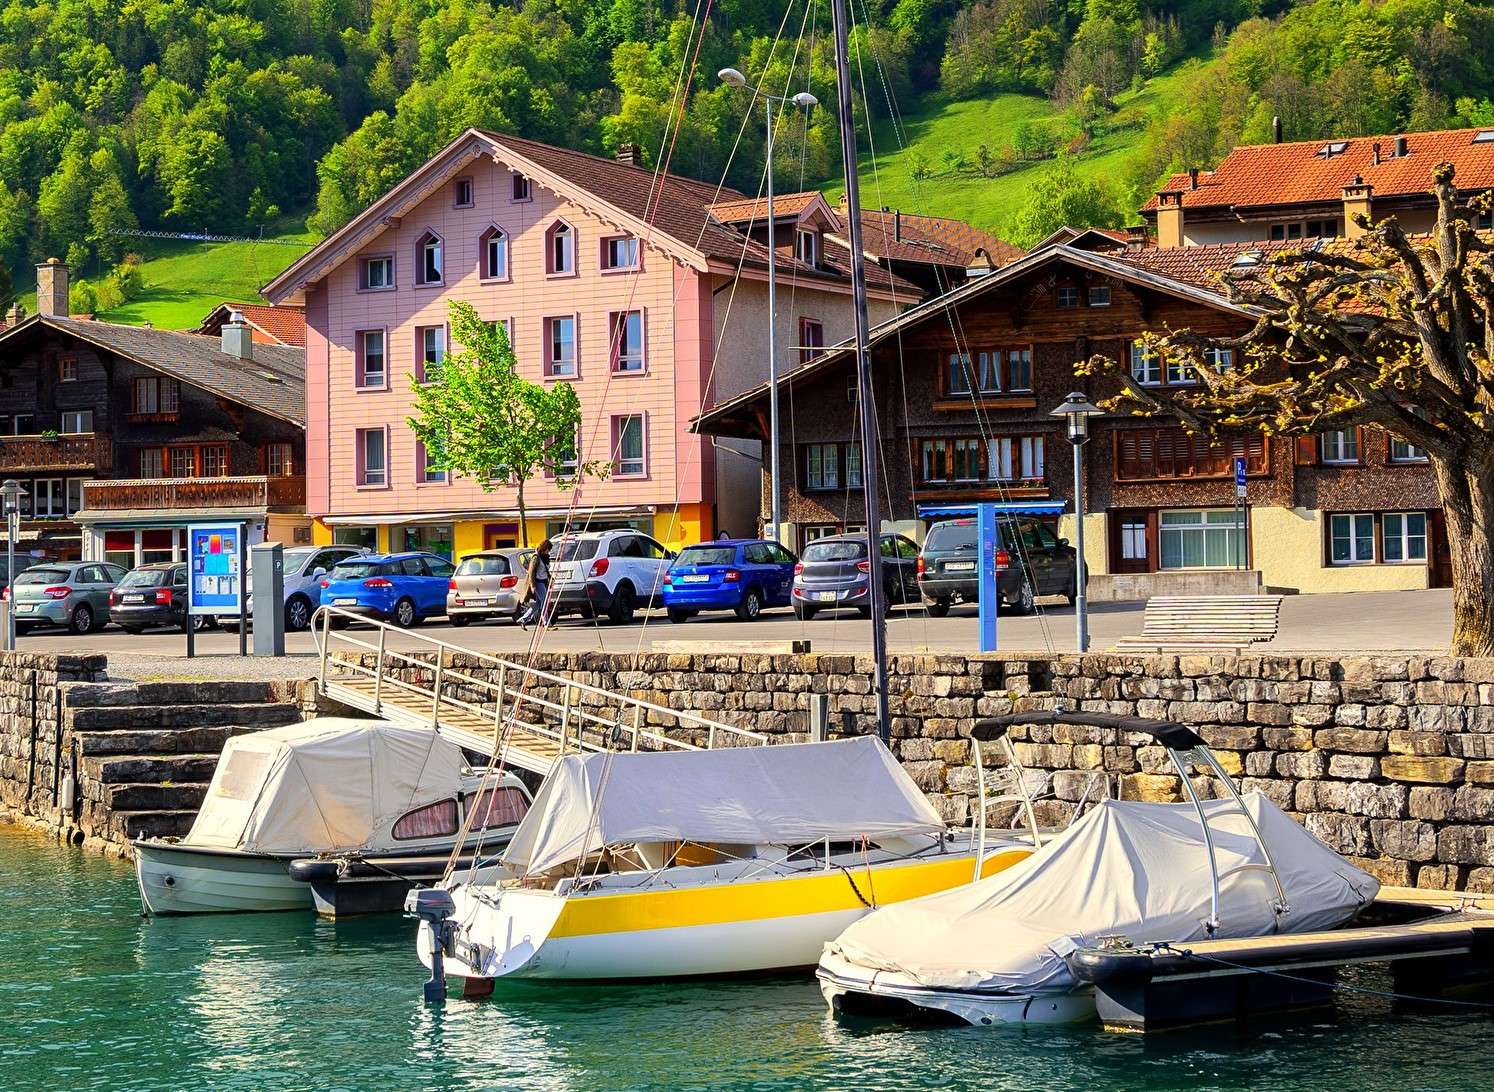 Case în Interlaken - o municipalitate din Elveția puzzle online